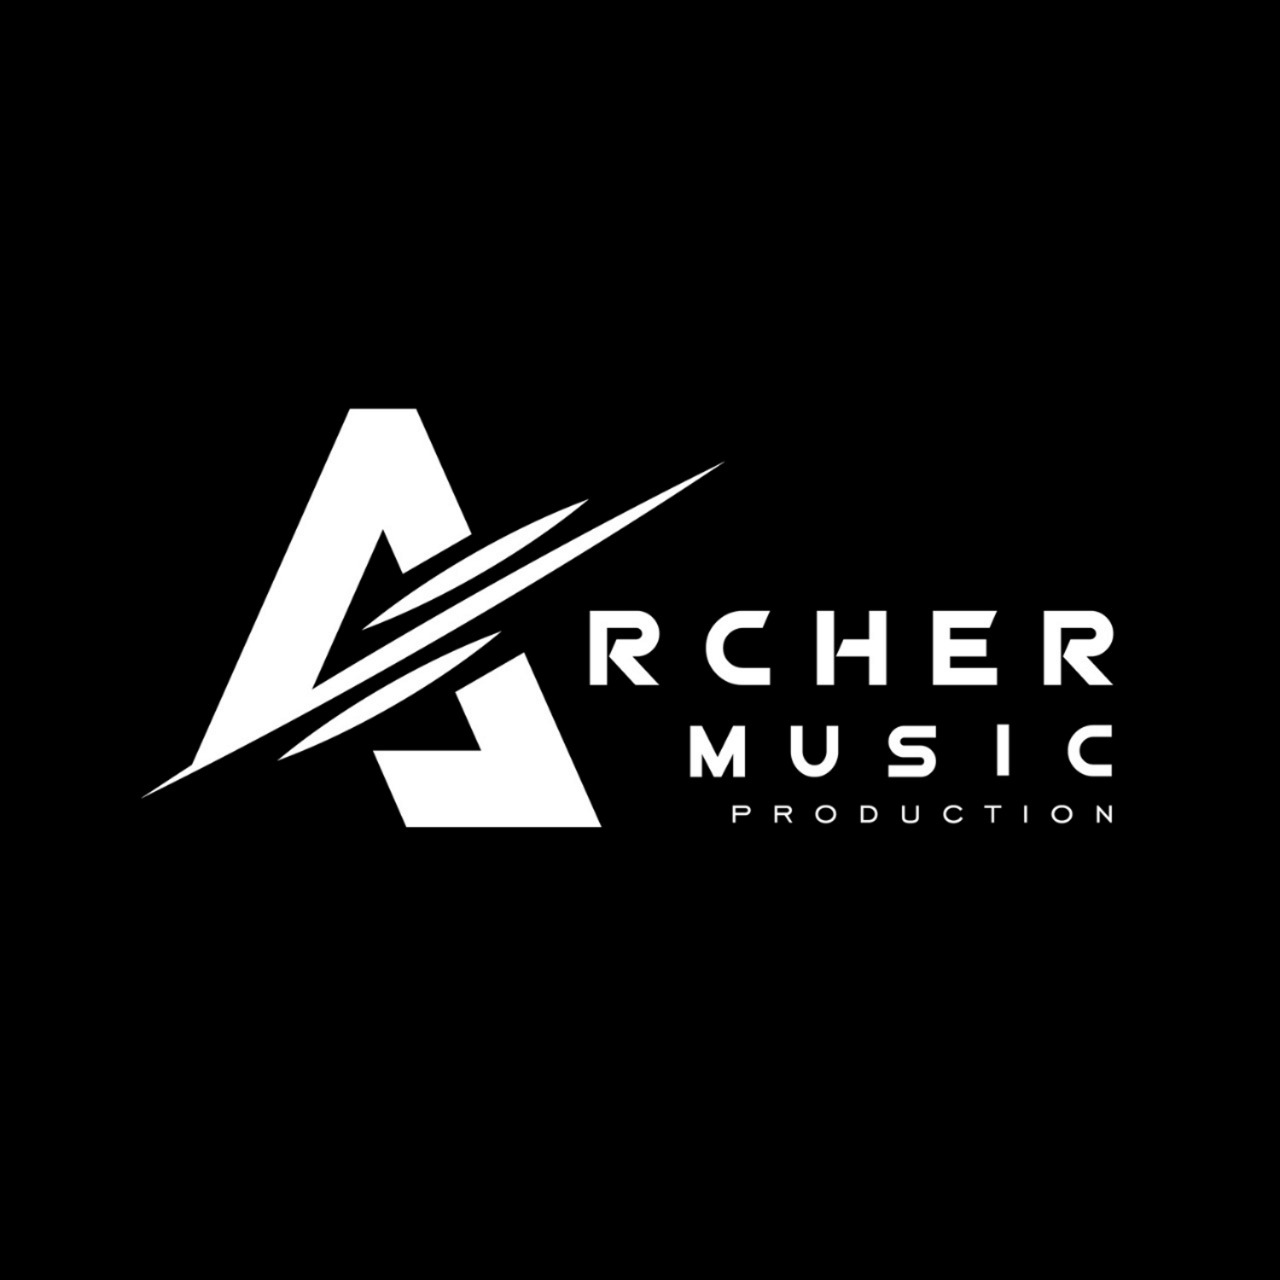 ARCHER MUSIC